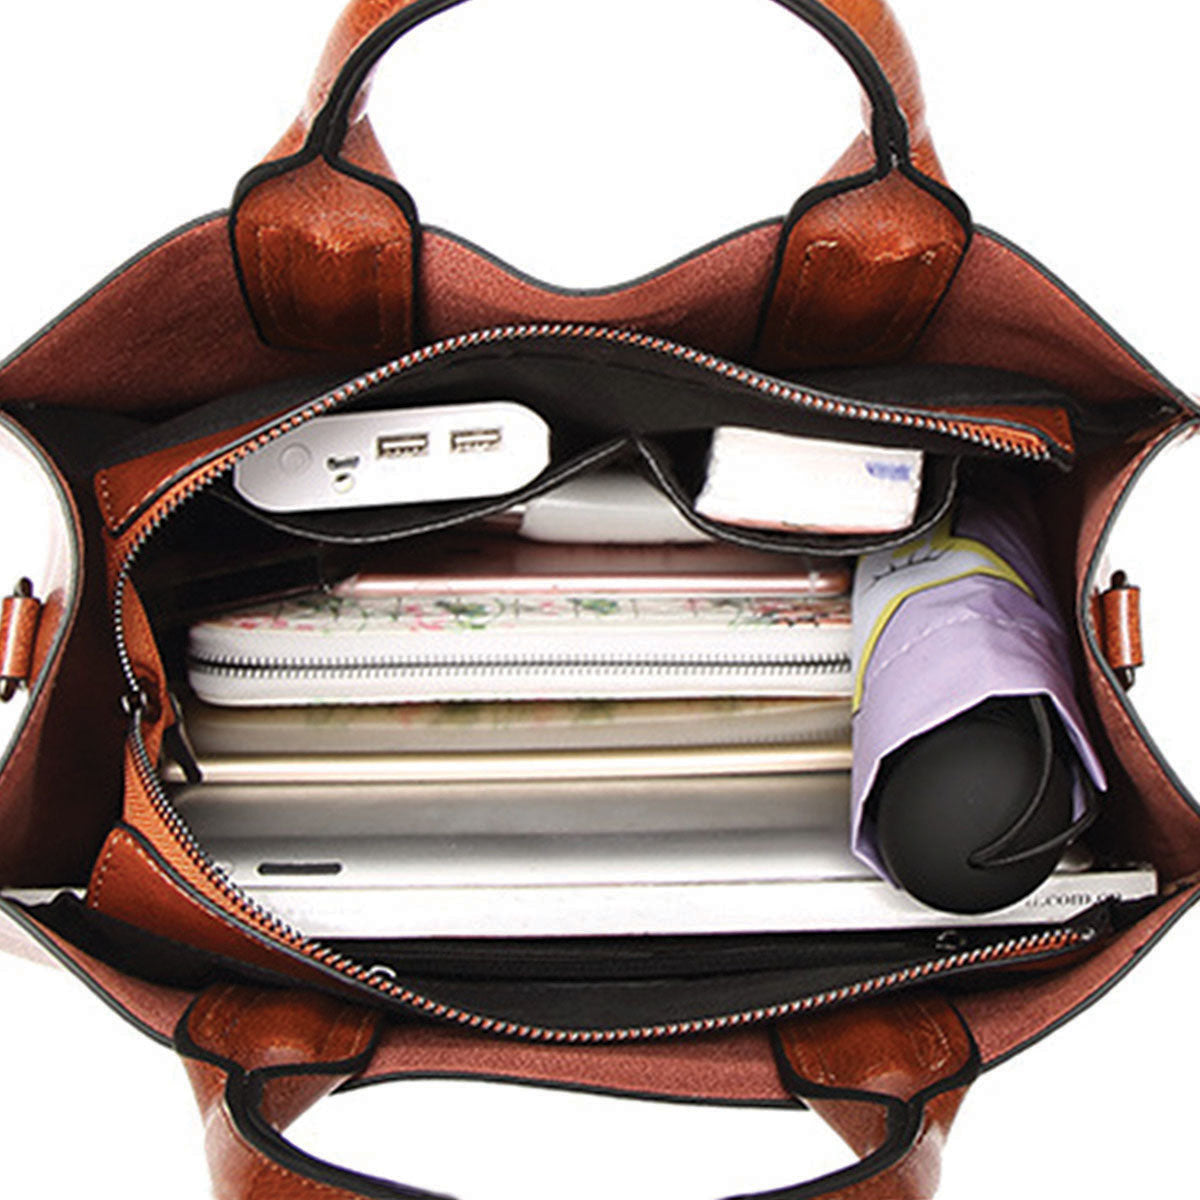 Ihr bester Begleiter – Dalmatiner-Luxus-Handtasche V1